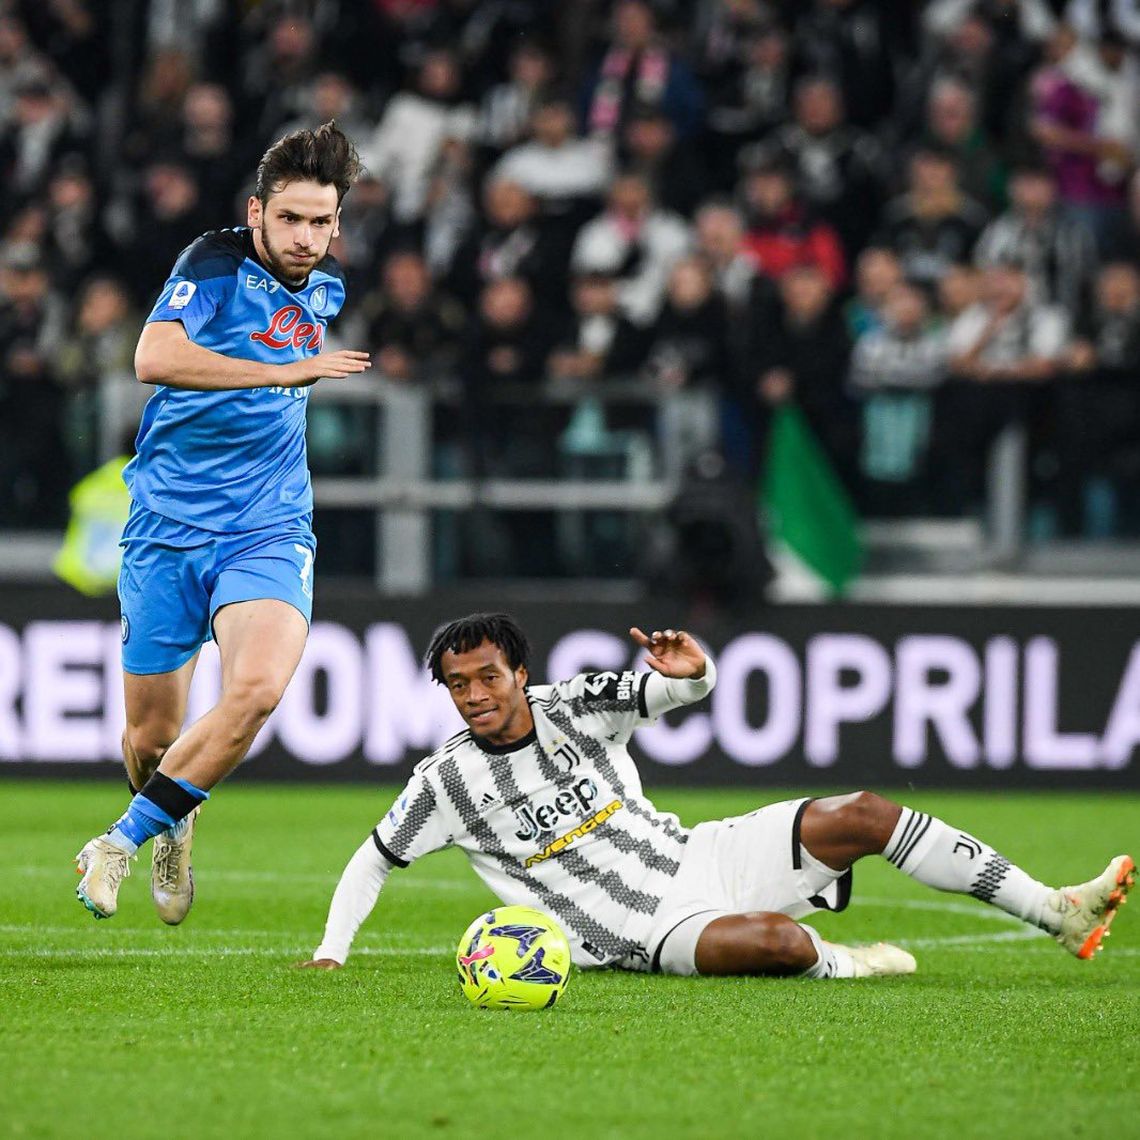 Nápoli derrotó a Juventus en un partidazo y se abraza con el título.